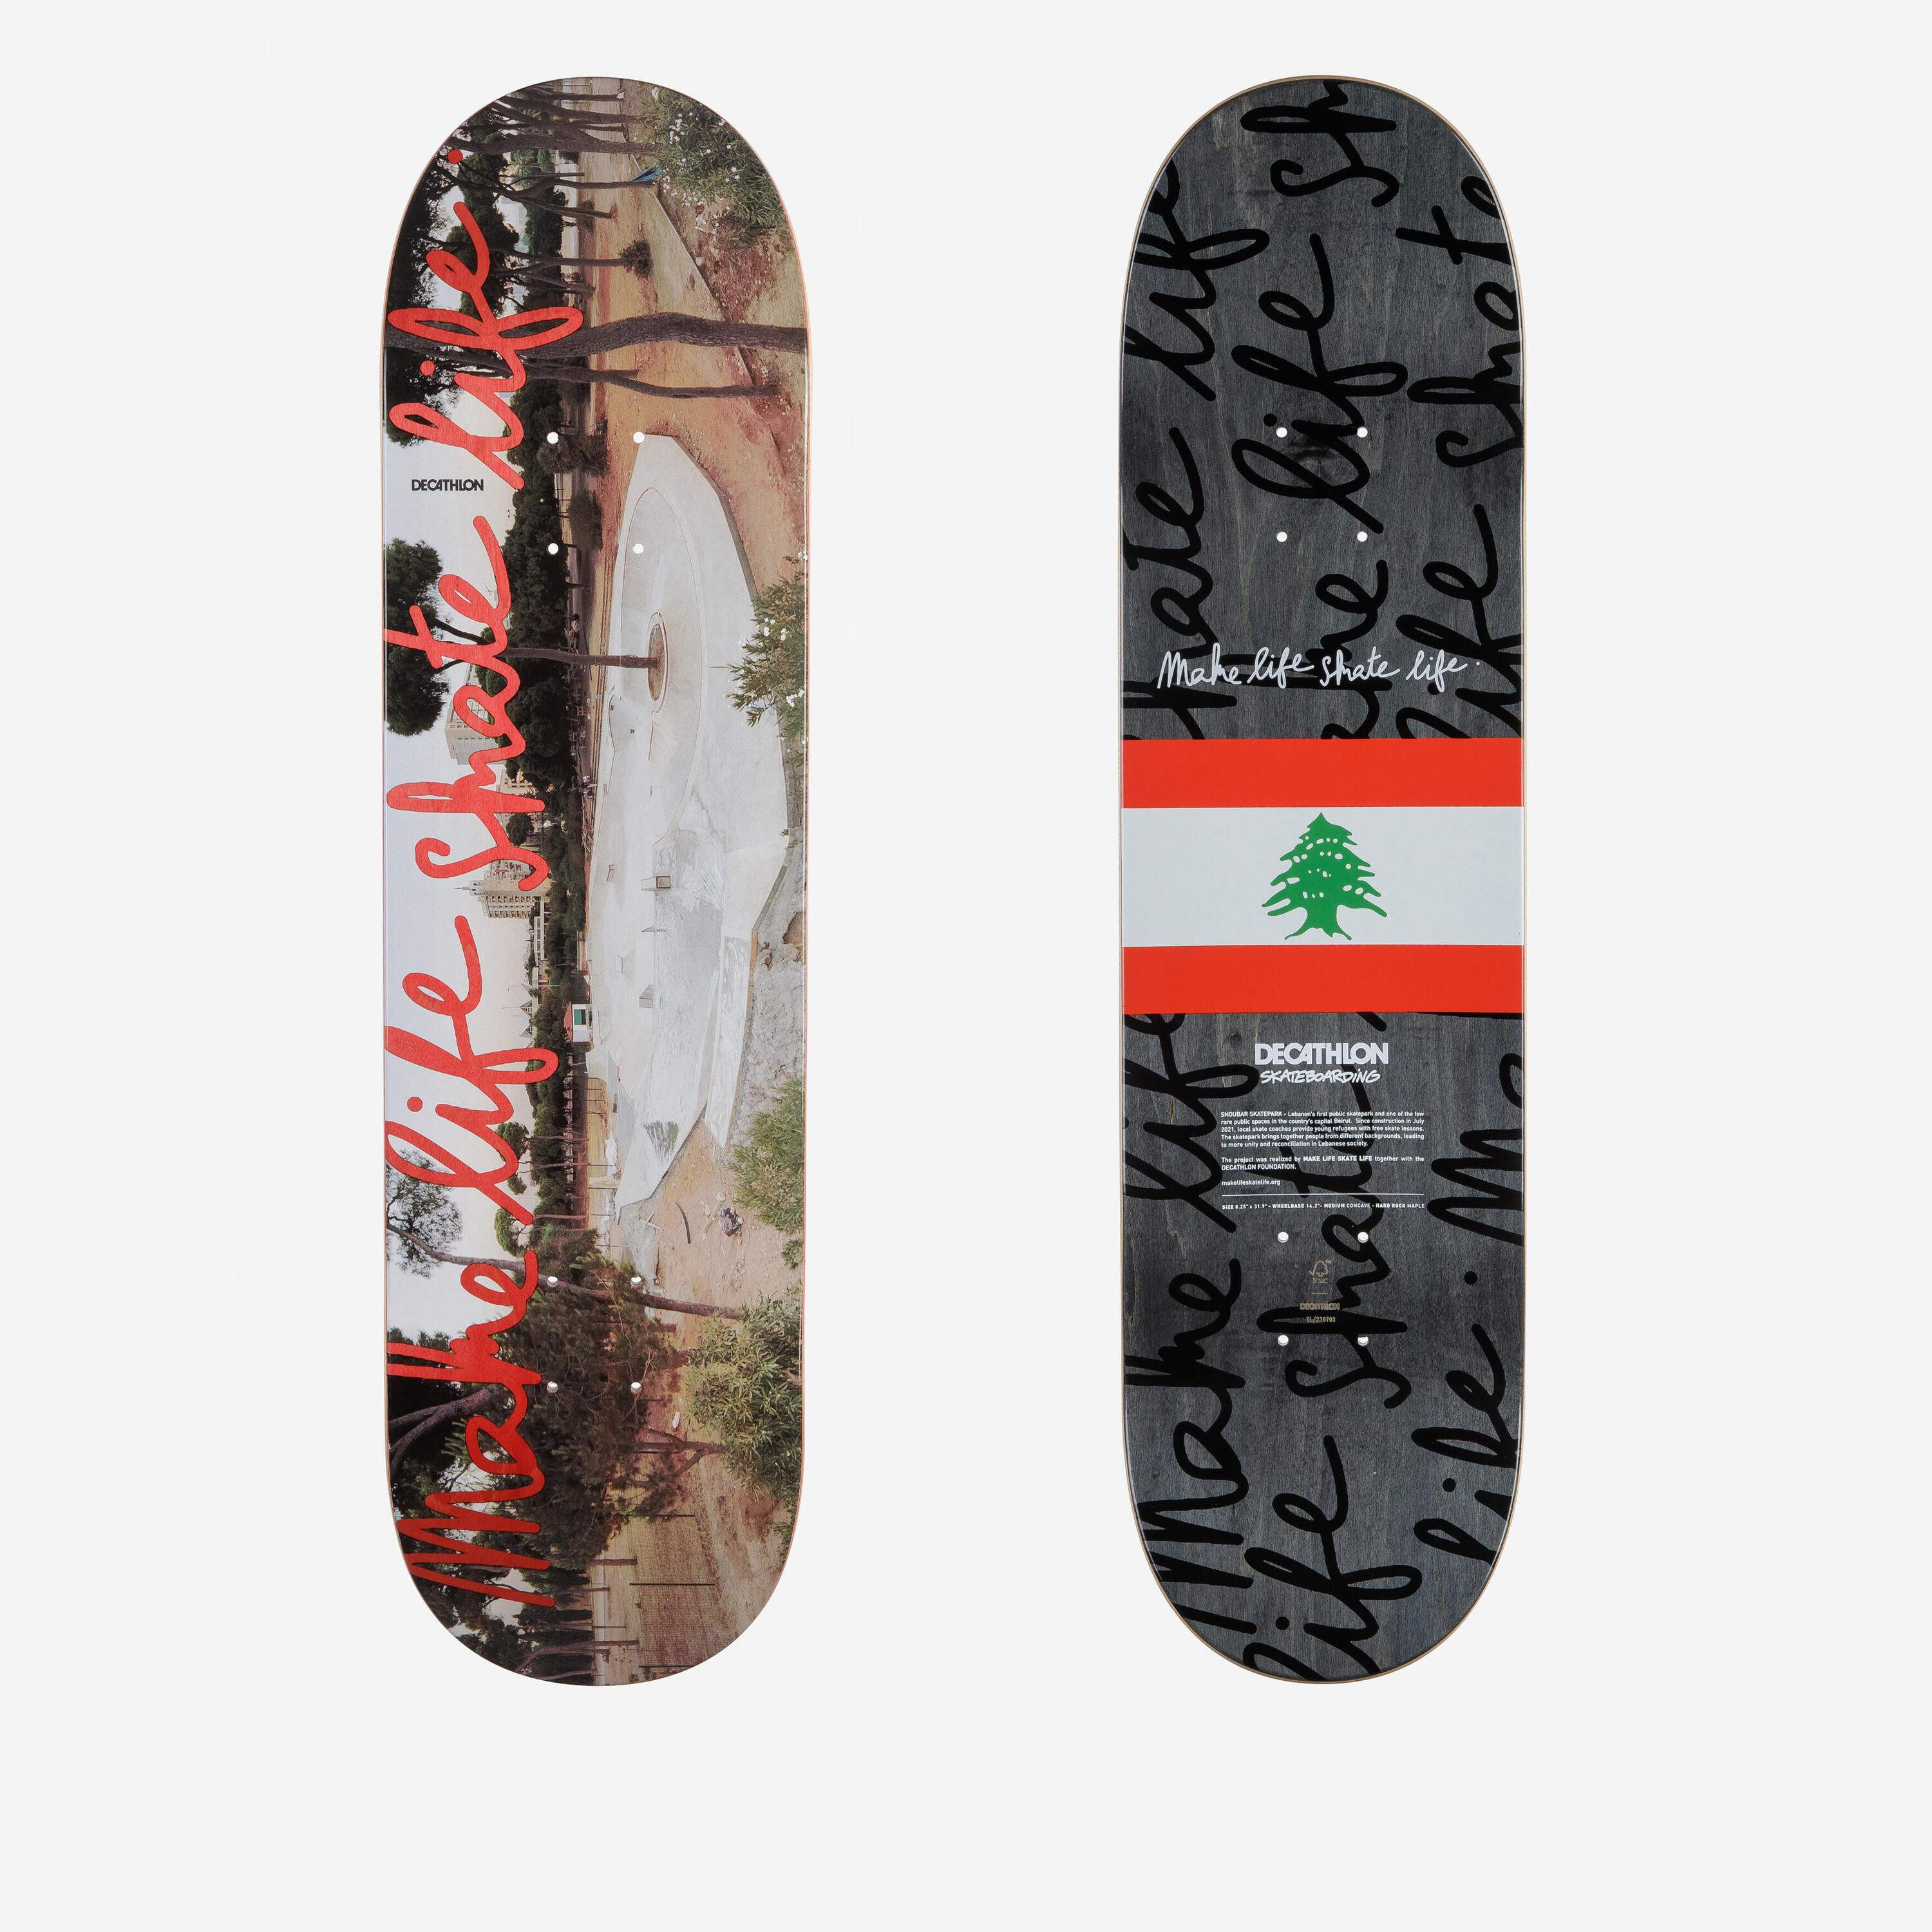 8.25" Maple Skateboard Deck DK500 Popsicle Make Life Skate Life Lebanon 1/6